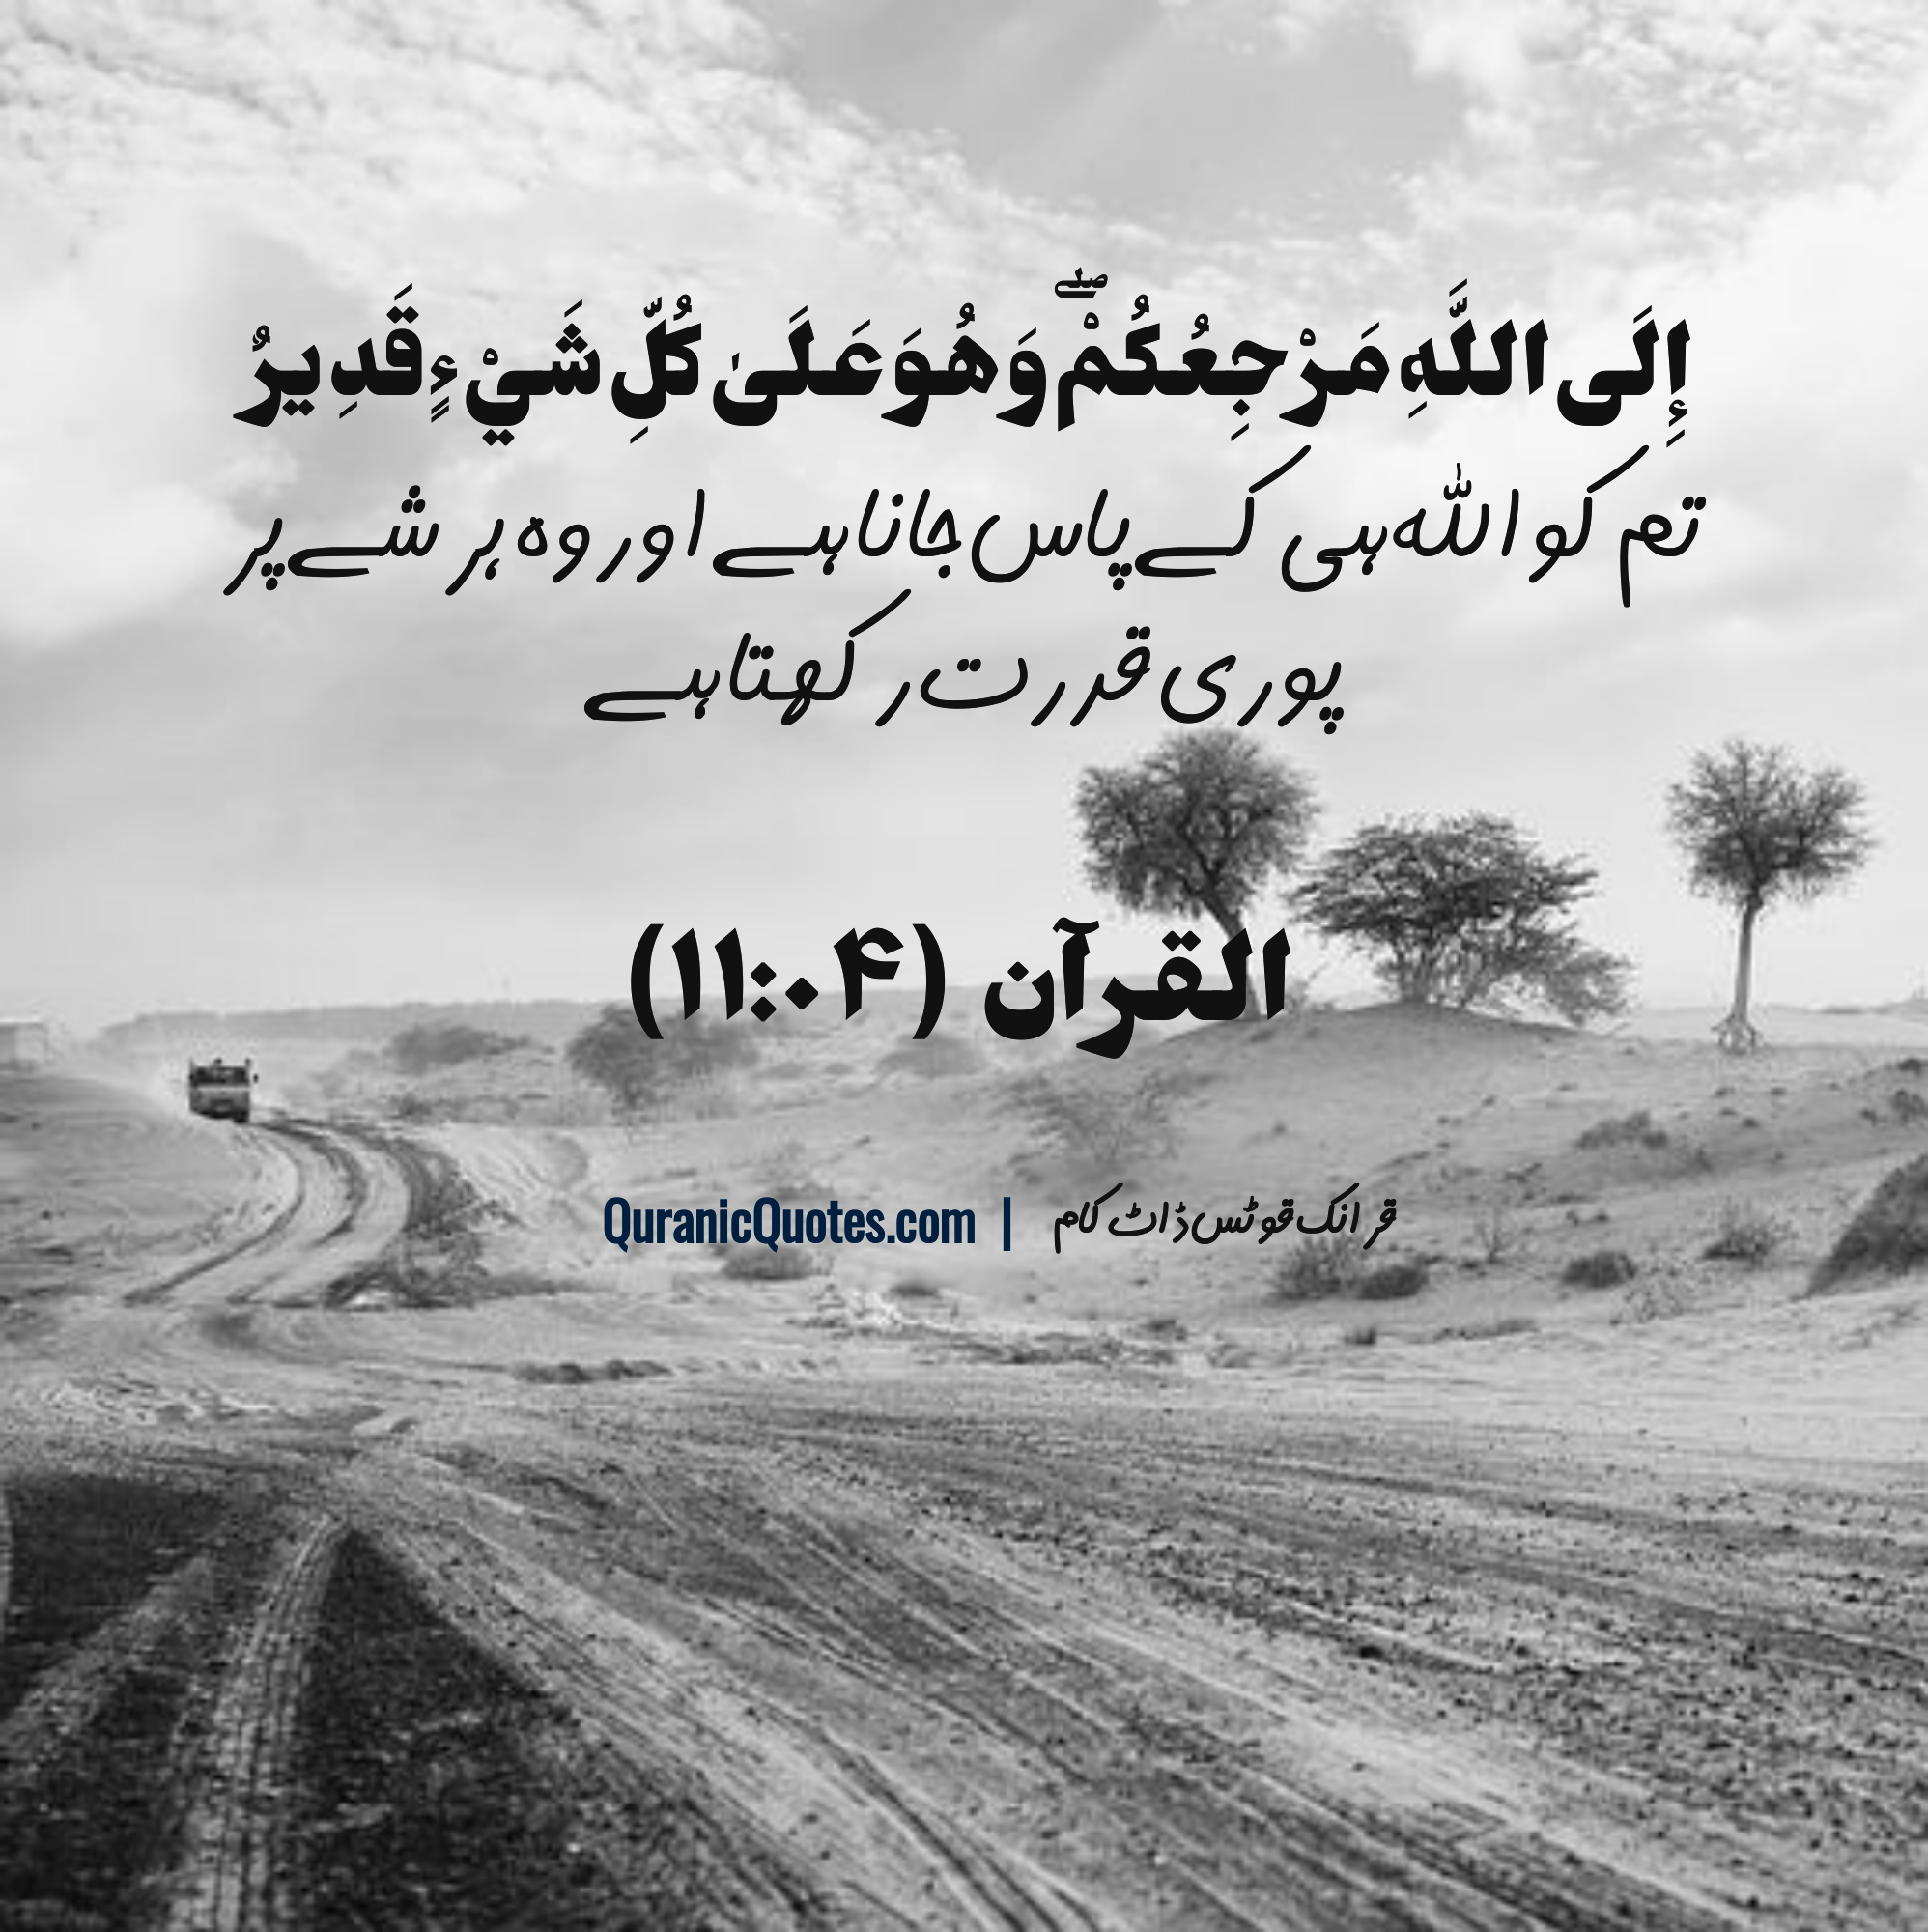 quran-quotes-urdu-11-04